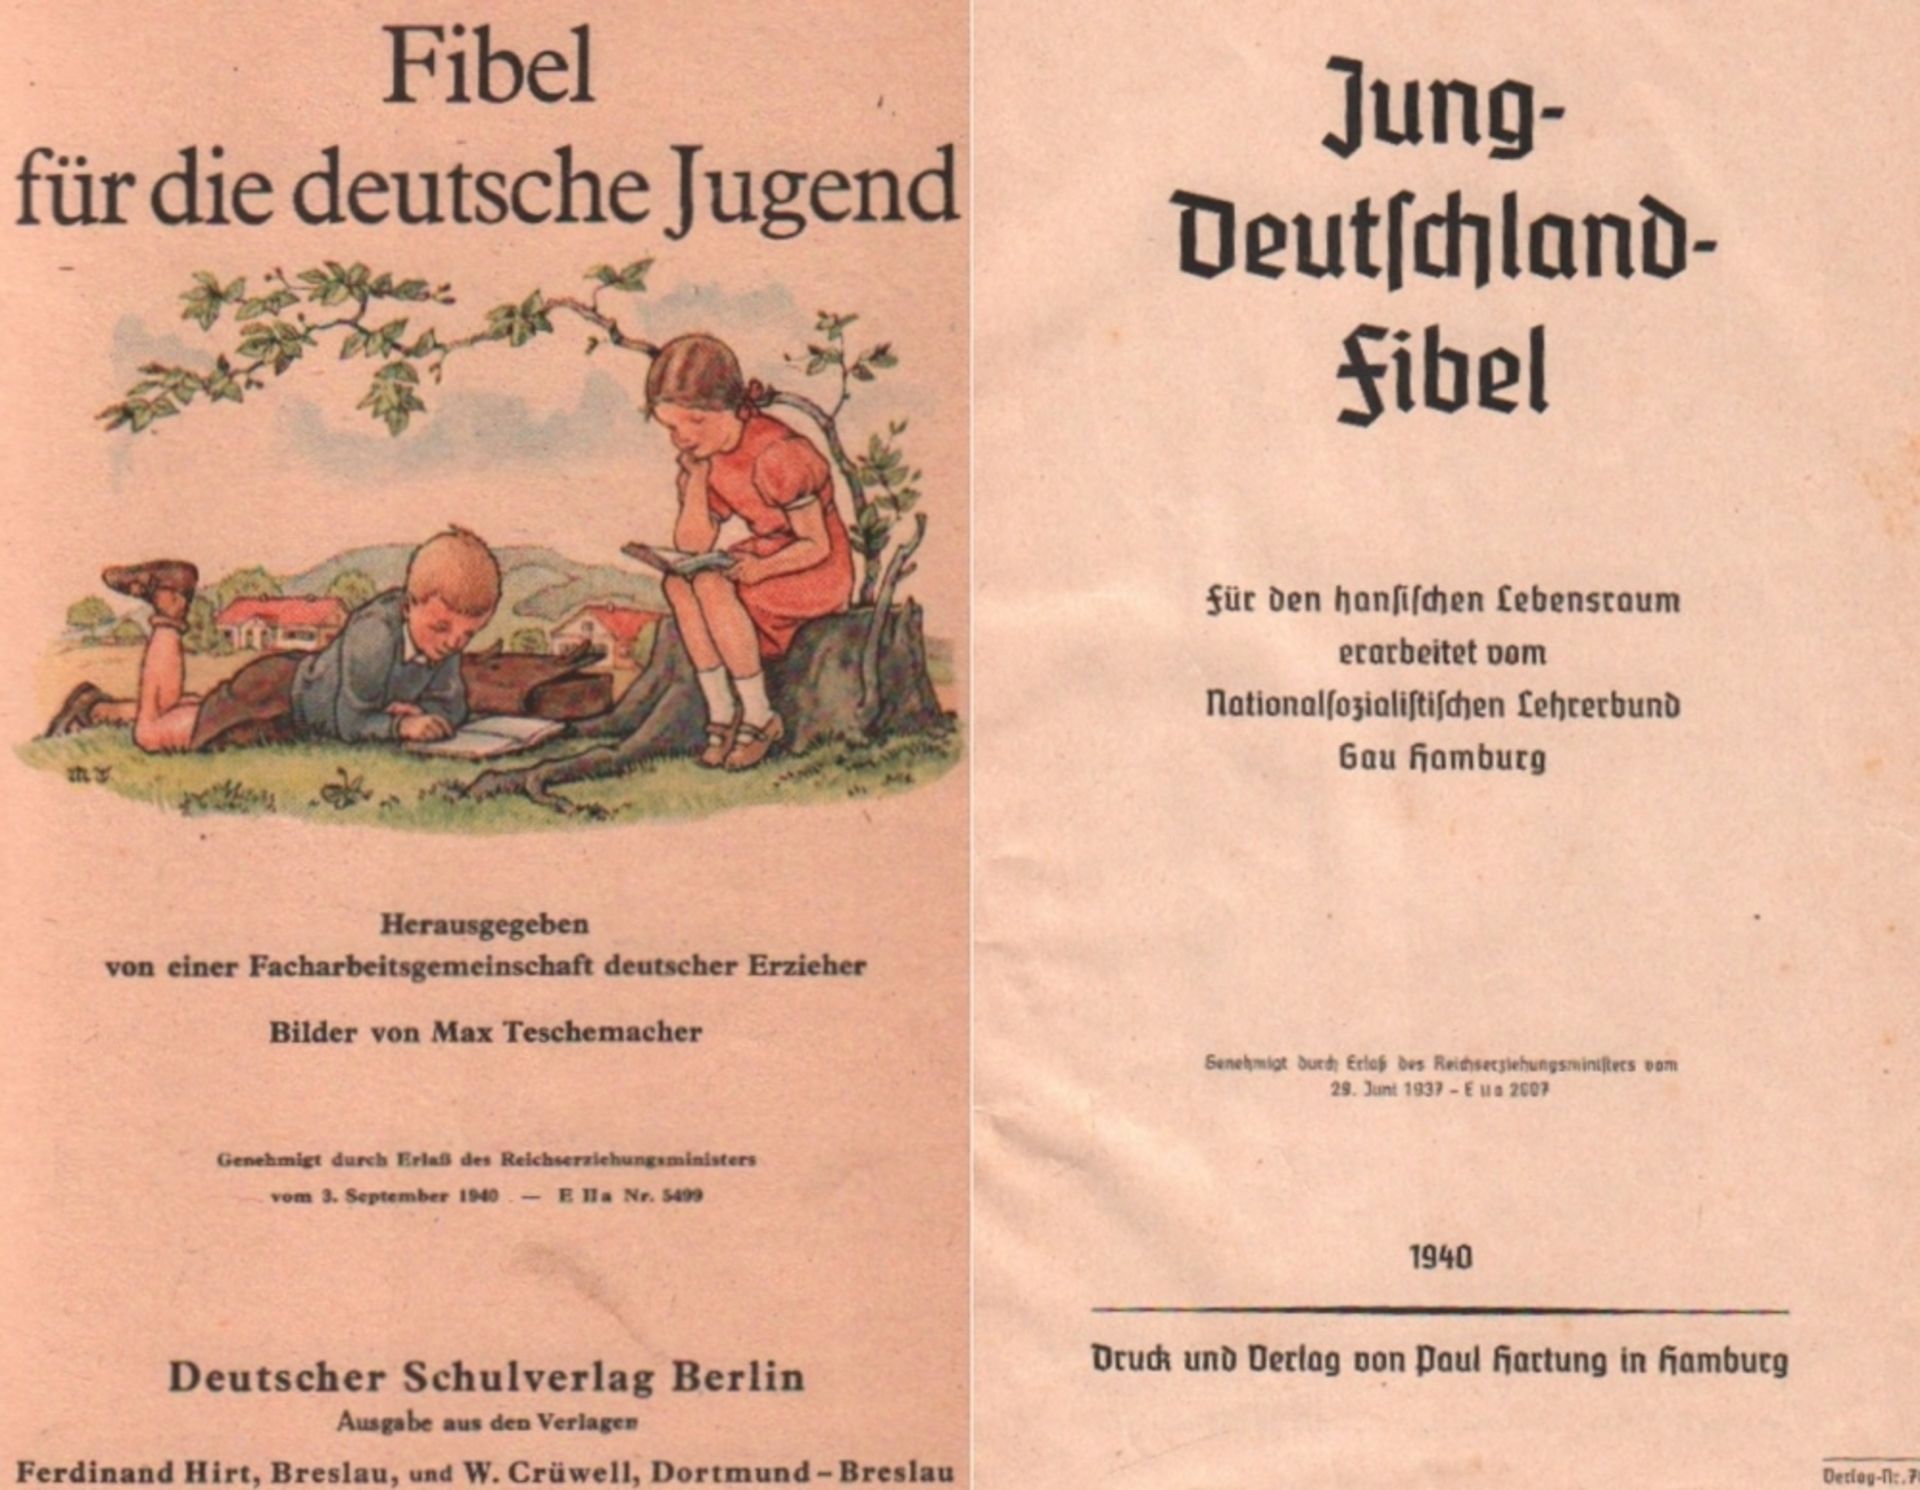 Fibel für die deutsche Jugend. Hrsg. von einer Facharbeitsgemeinschaft deutscher Erzieher. Berlin